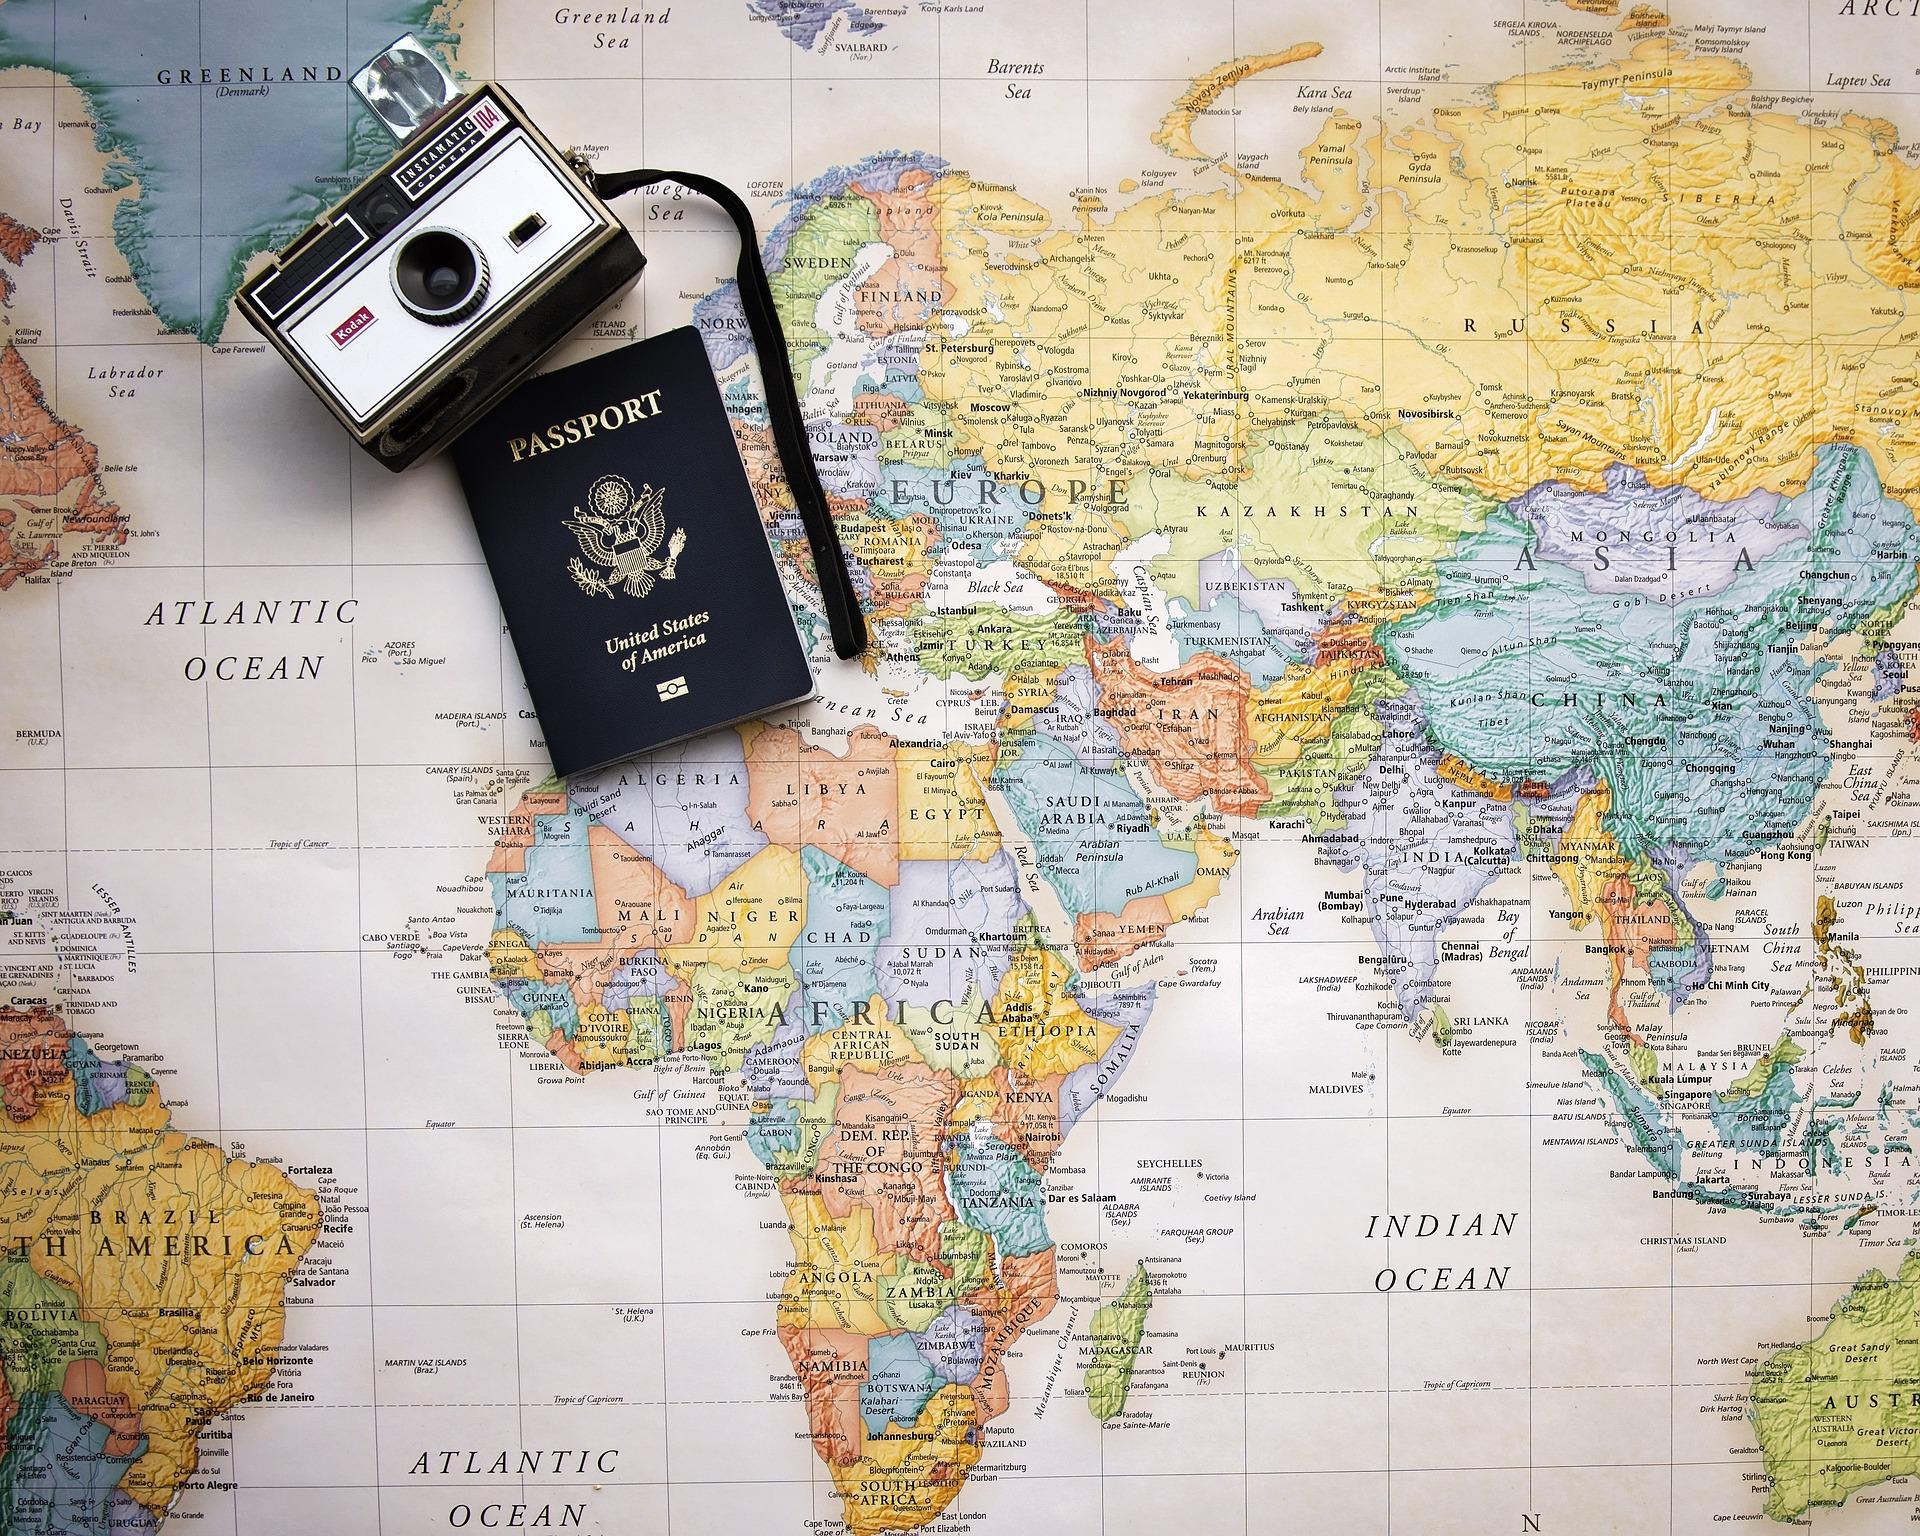 出国有没有必要带护照原件去，出国旅行前你需要知道的6个护照常识